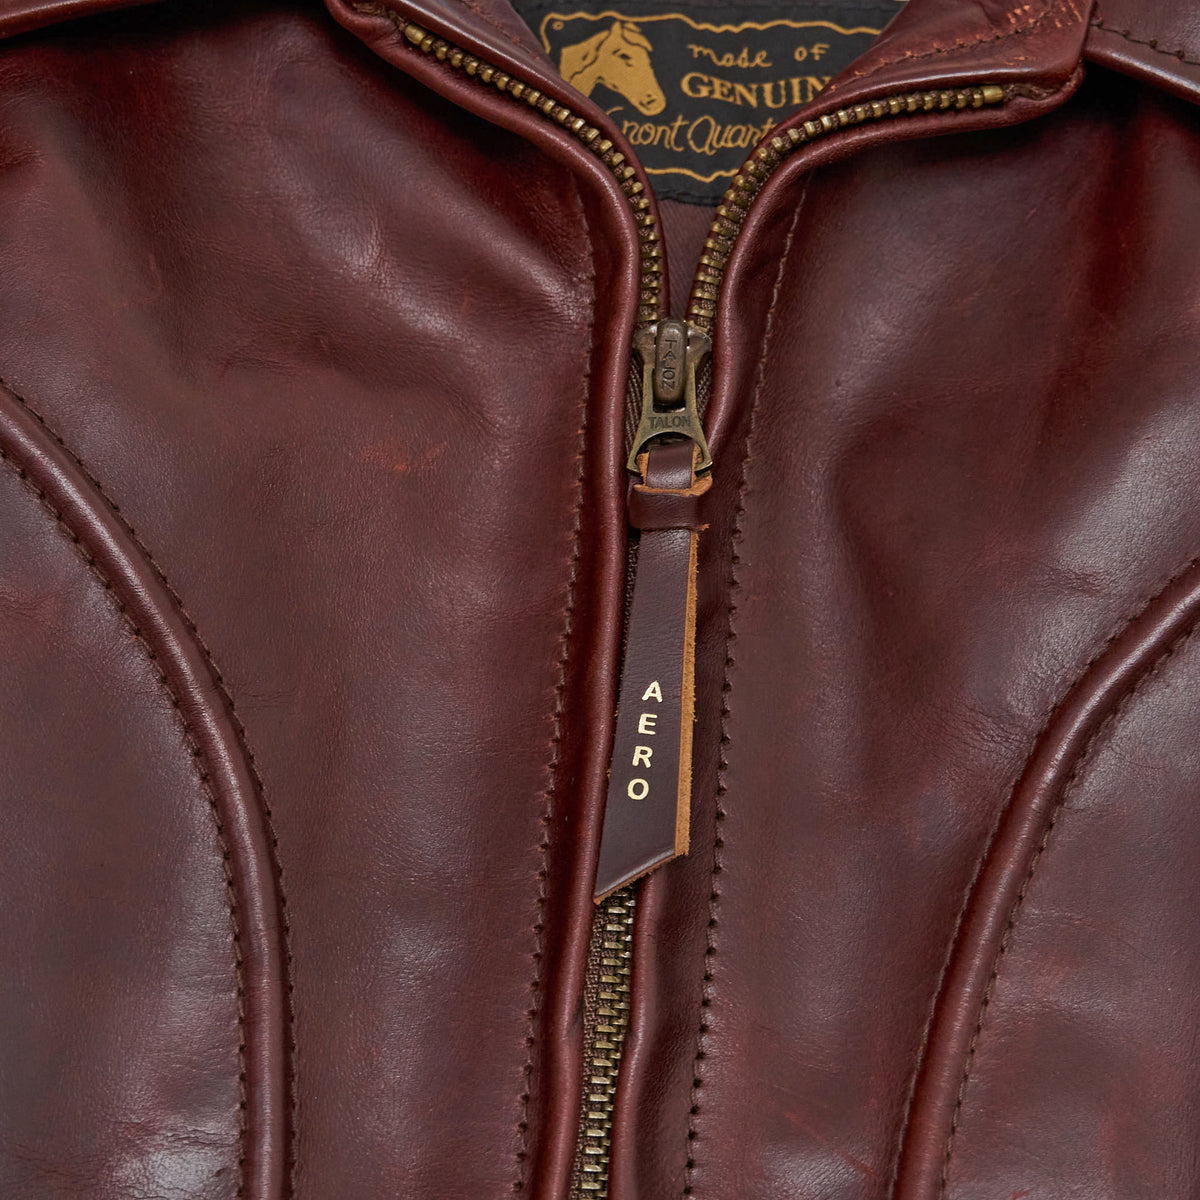 Aero Leathers Hercules Leather Jacket